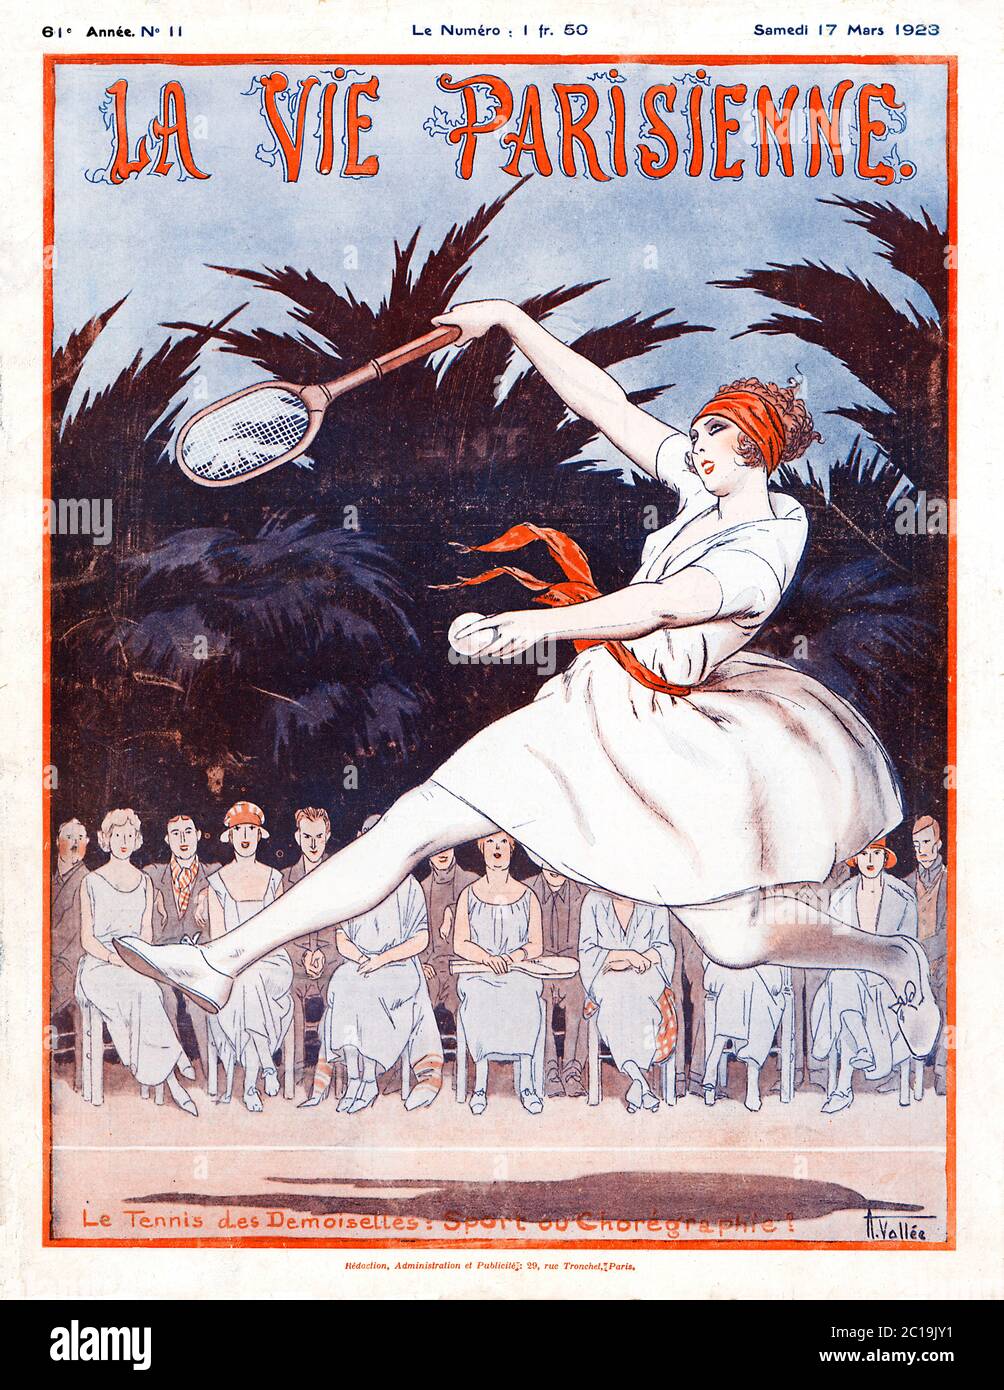 Tennis Des Desmoiselles, Sport ou coreographie? 1923 la rivista francese copre la grazia e la bellezza del tennis femminile Foto Stock